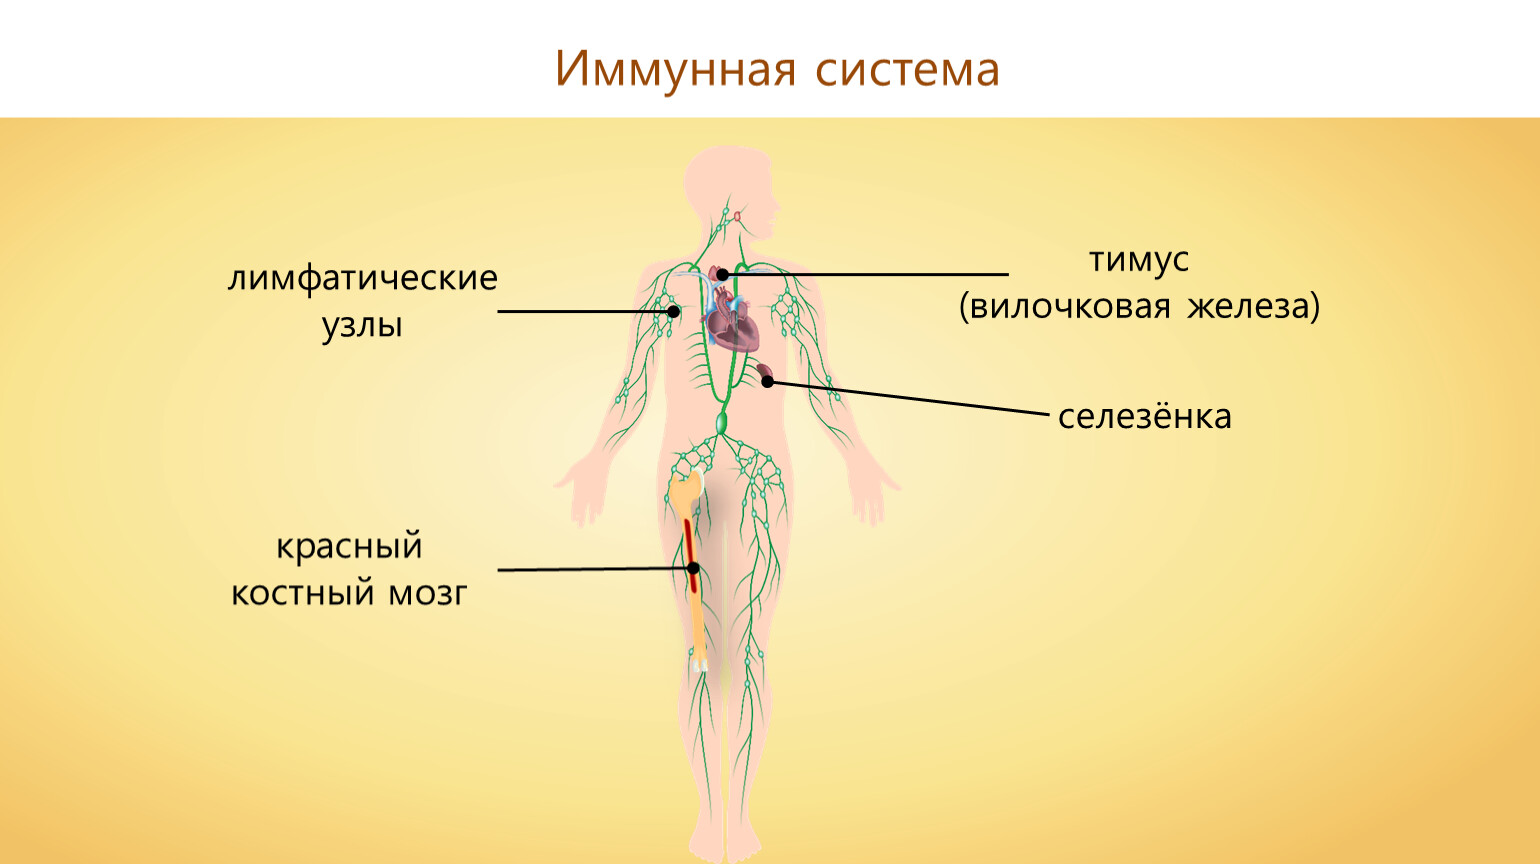 Иммунная система тимус. Тимус и лимфатические узлы. Лимфатические узлы иммунная система. Тимус иммунная система. Селезенка иммунная система.